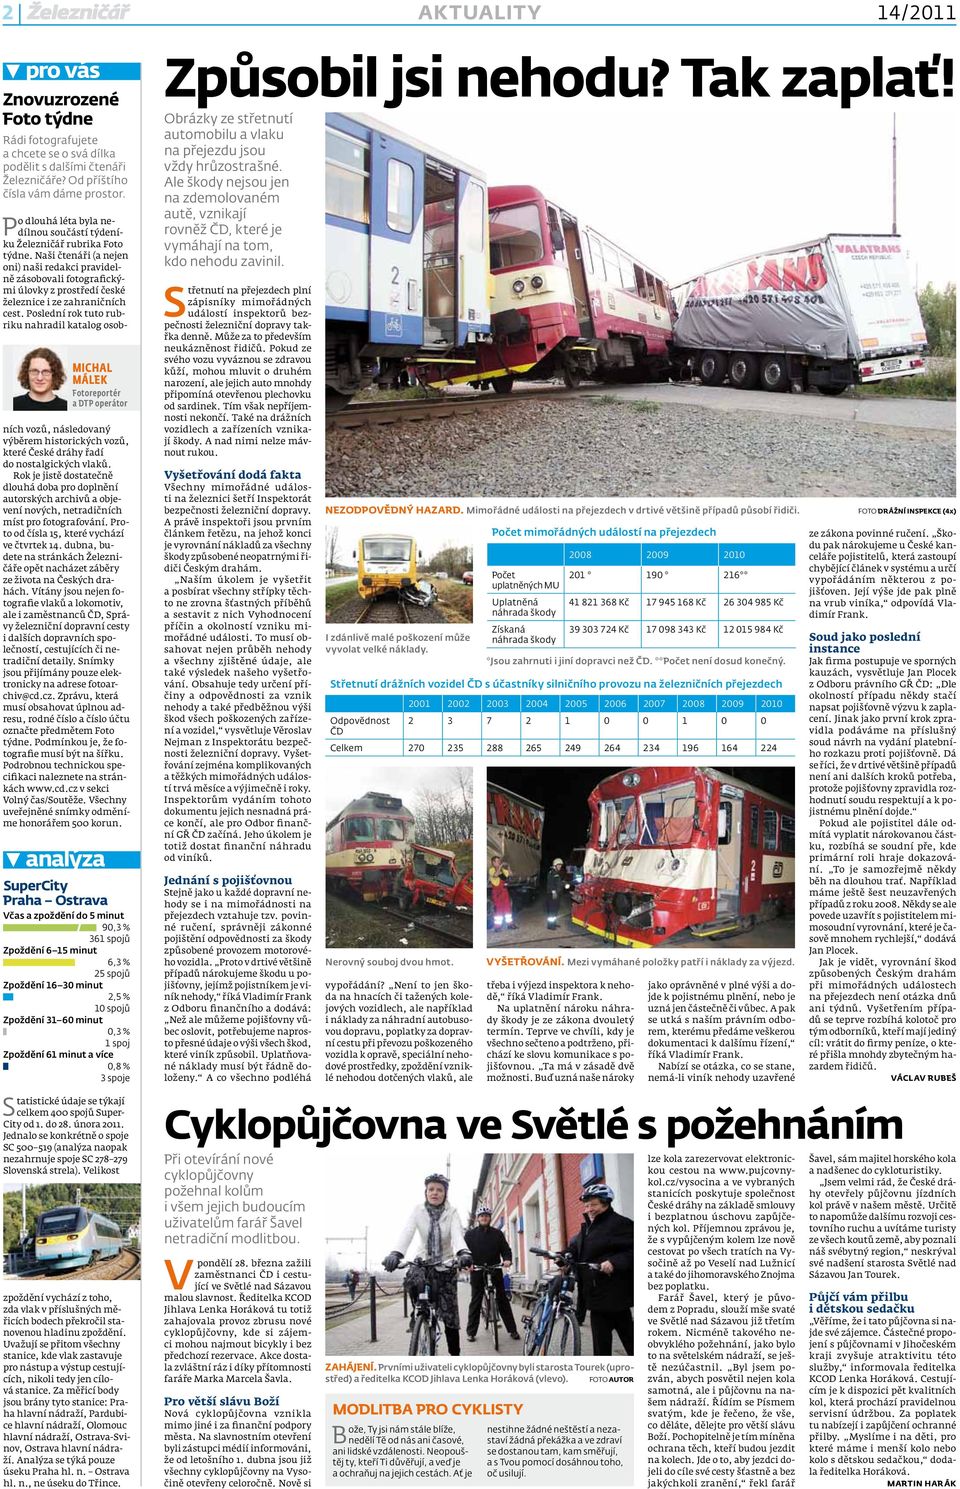 Naši čtenáři (a nejen oni) naši redakci pravidelně zásobovali fotografickými úlovky z prostředí české železnice i ze zahraničních cest.